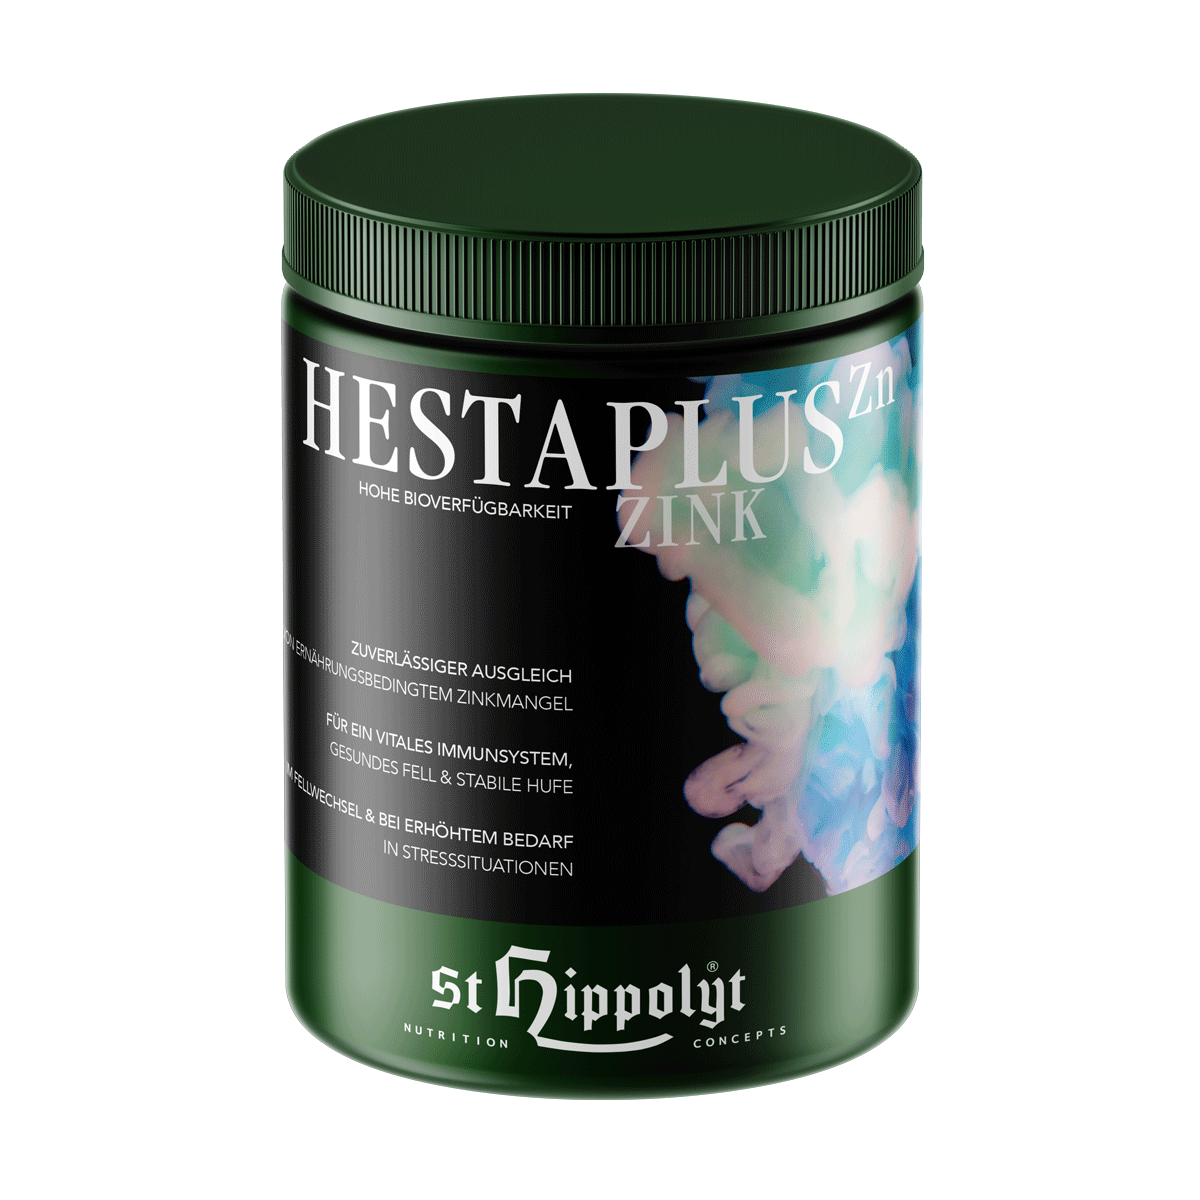 St Hippolyt Hestapluss zink 1kg